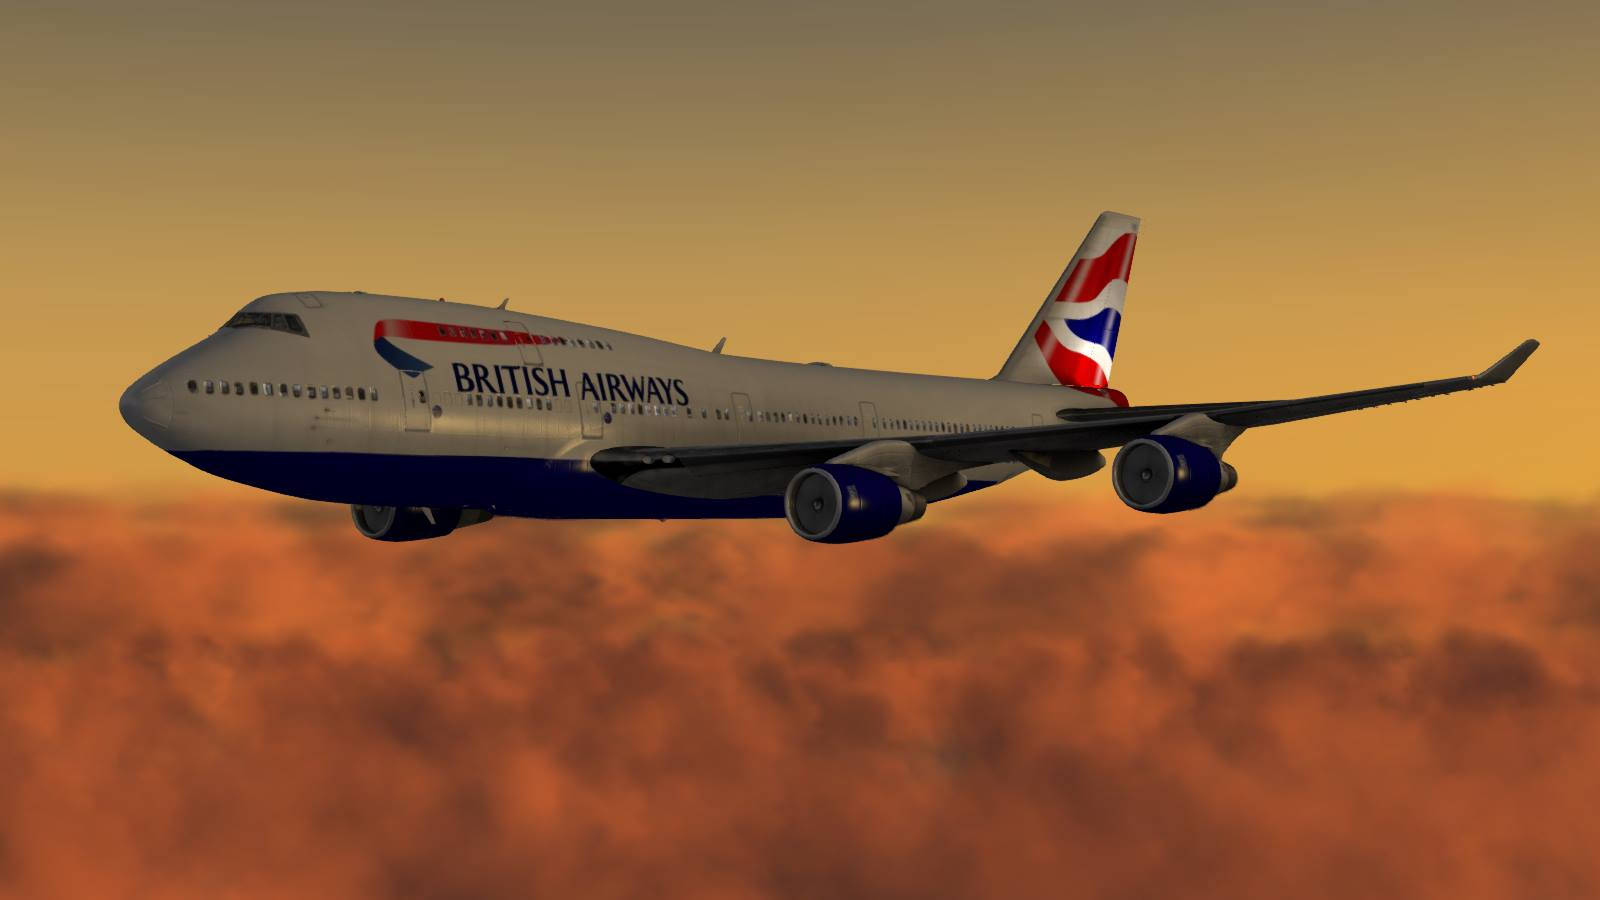 Aviónde British Airways Con Cielo Naranja Fondo de pantalla